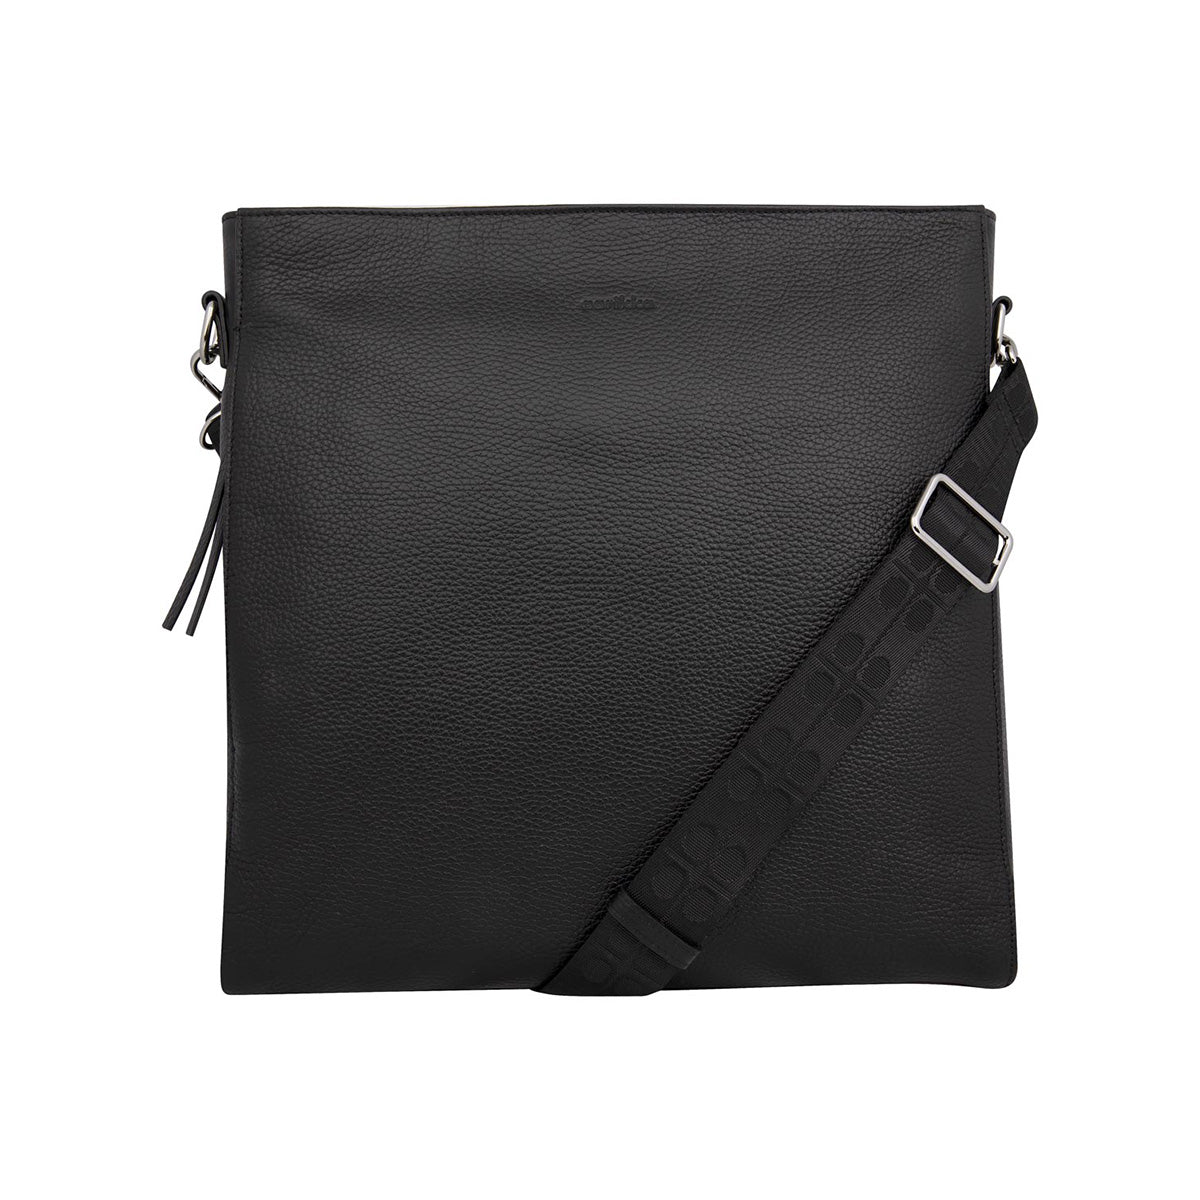 Minea shoulder bag, black